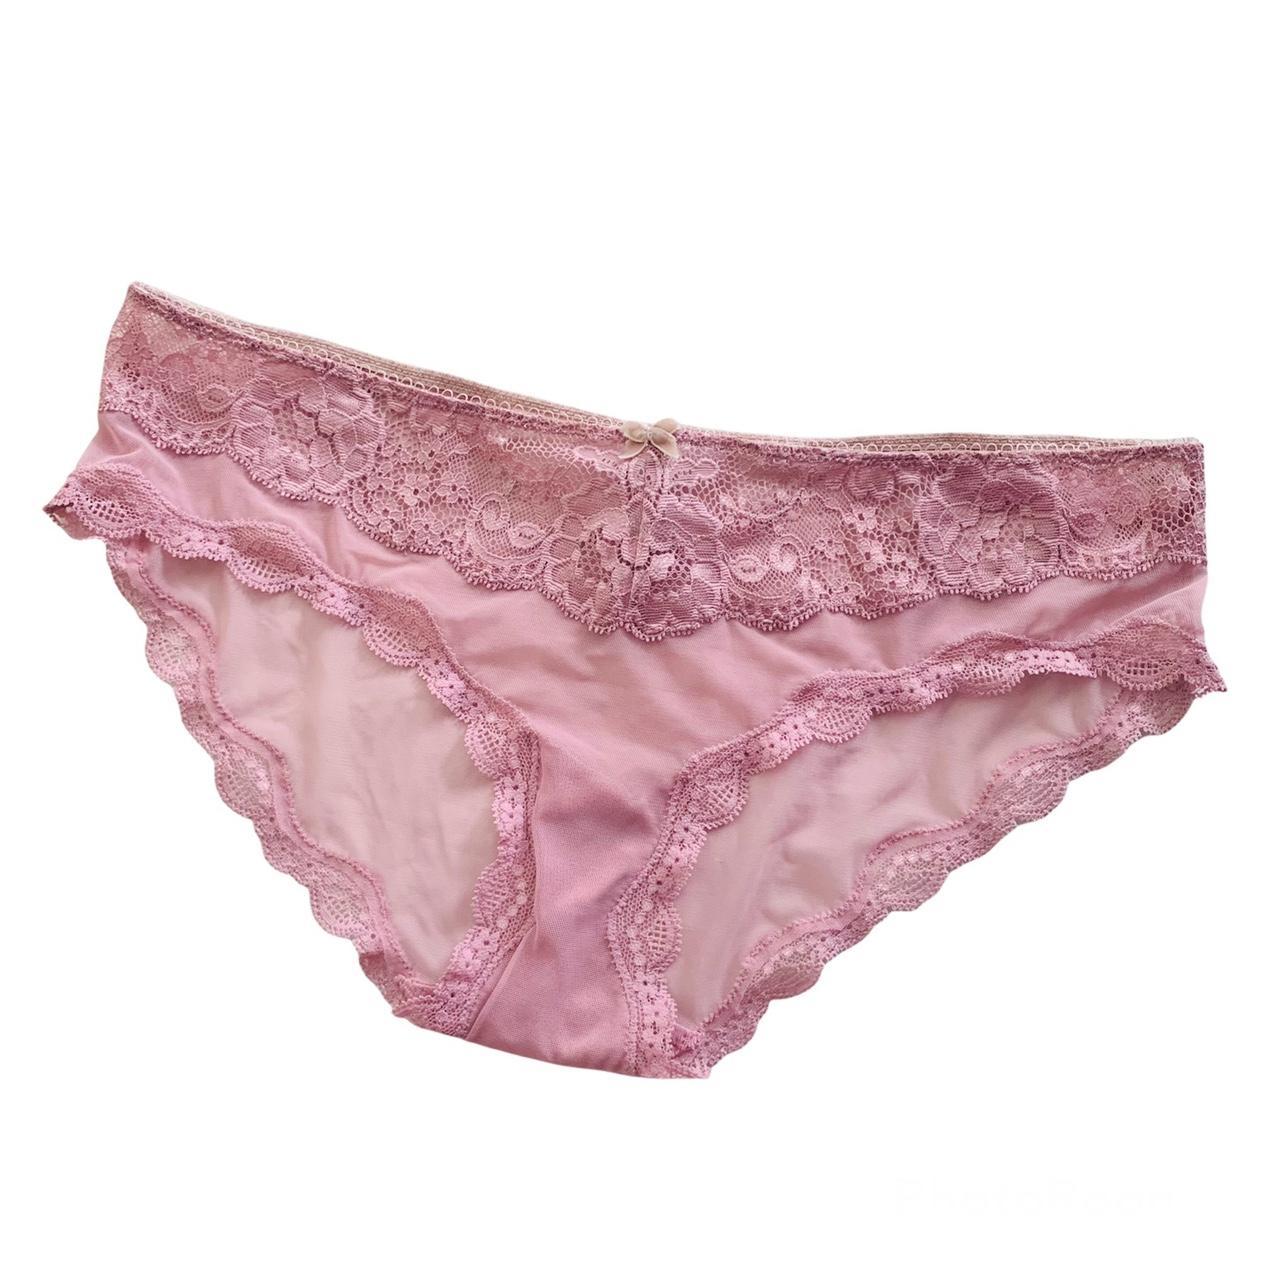 Victoria’s Secret Sheer Purple Panties, Description